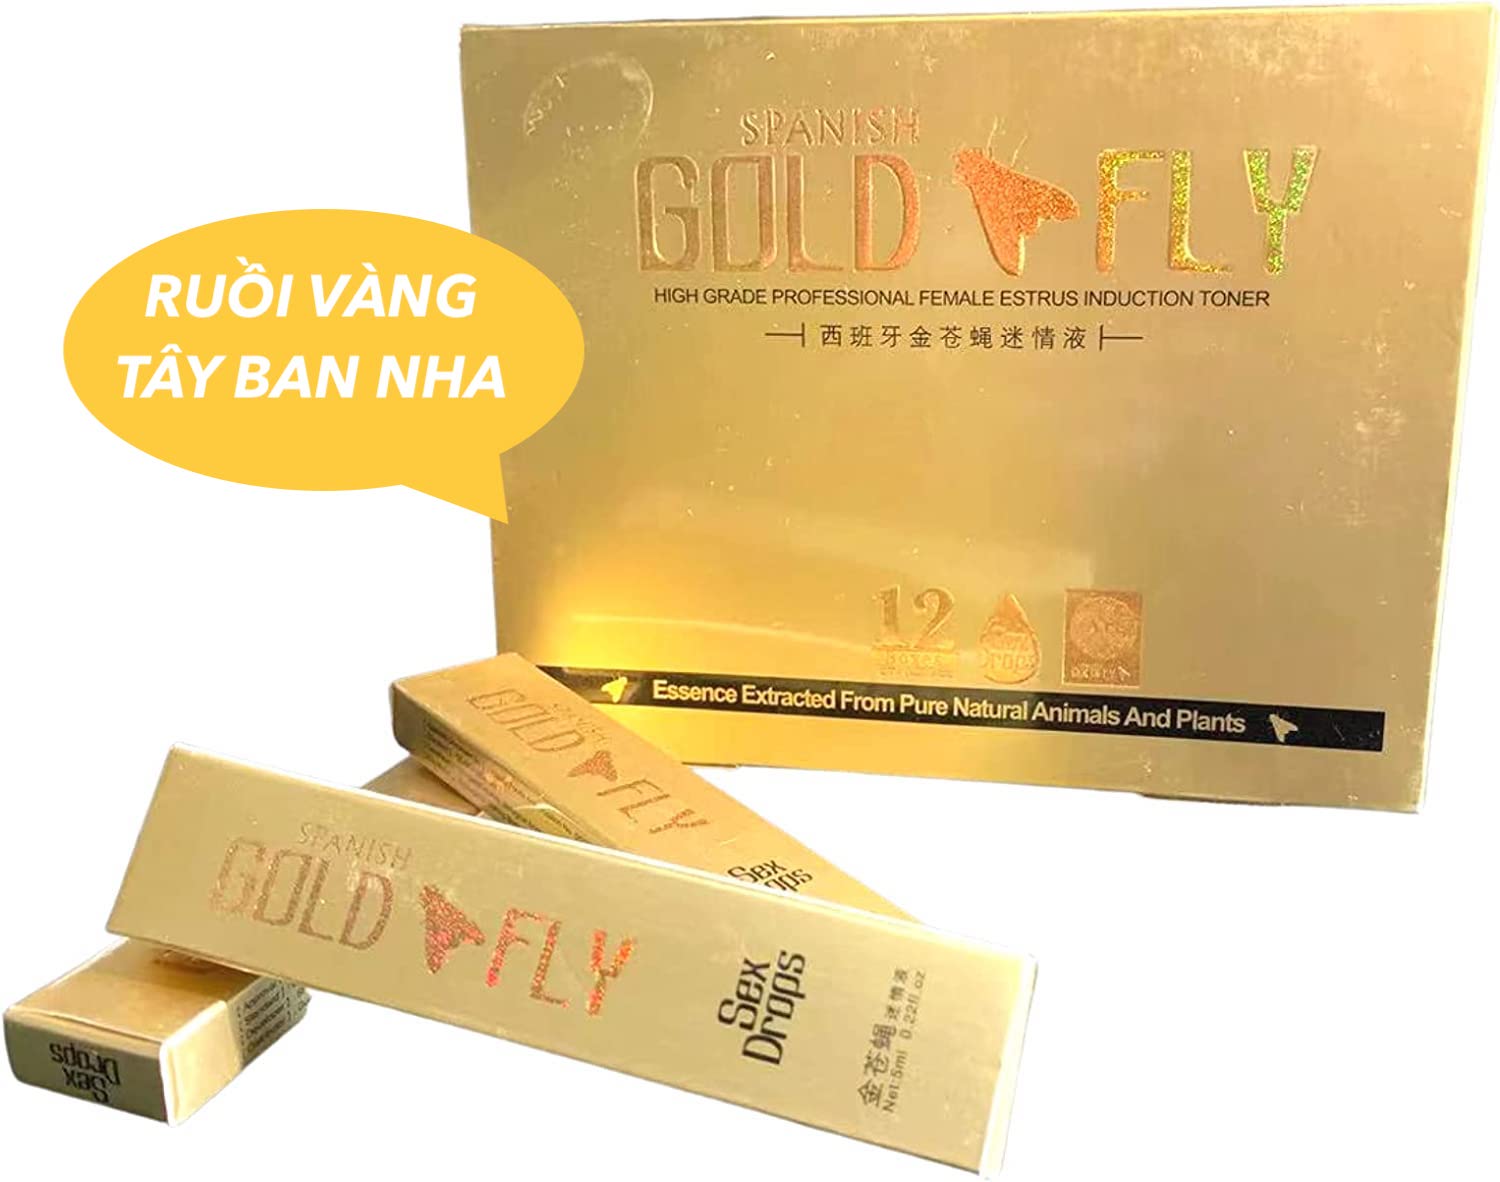  Bỏ sỉ Spanish Gold Fly Drops Ruồi vàng Tây Ban Nha thuốc kích dục nữ chính hãng hàng mới về